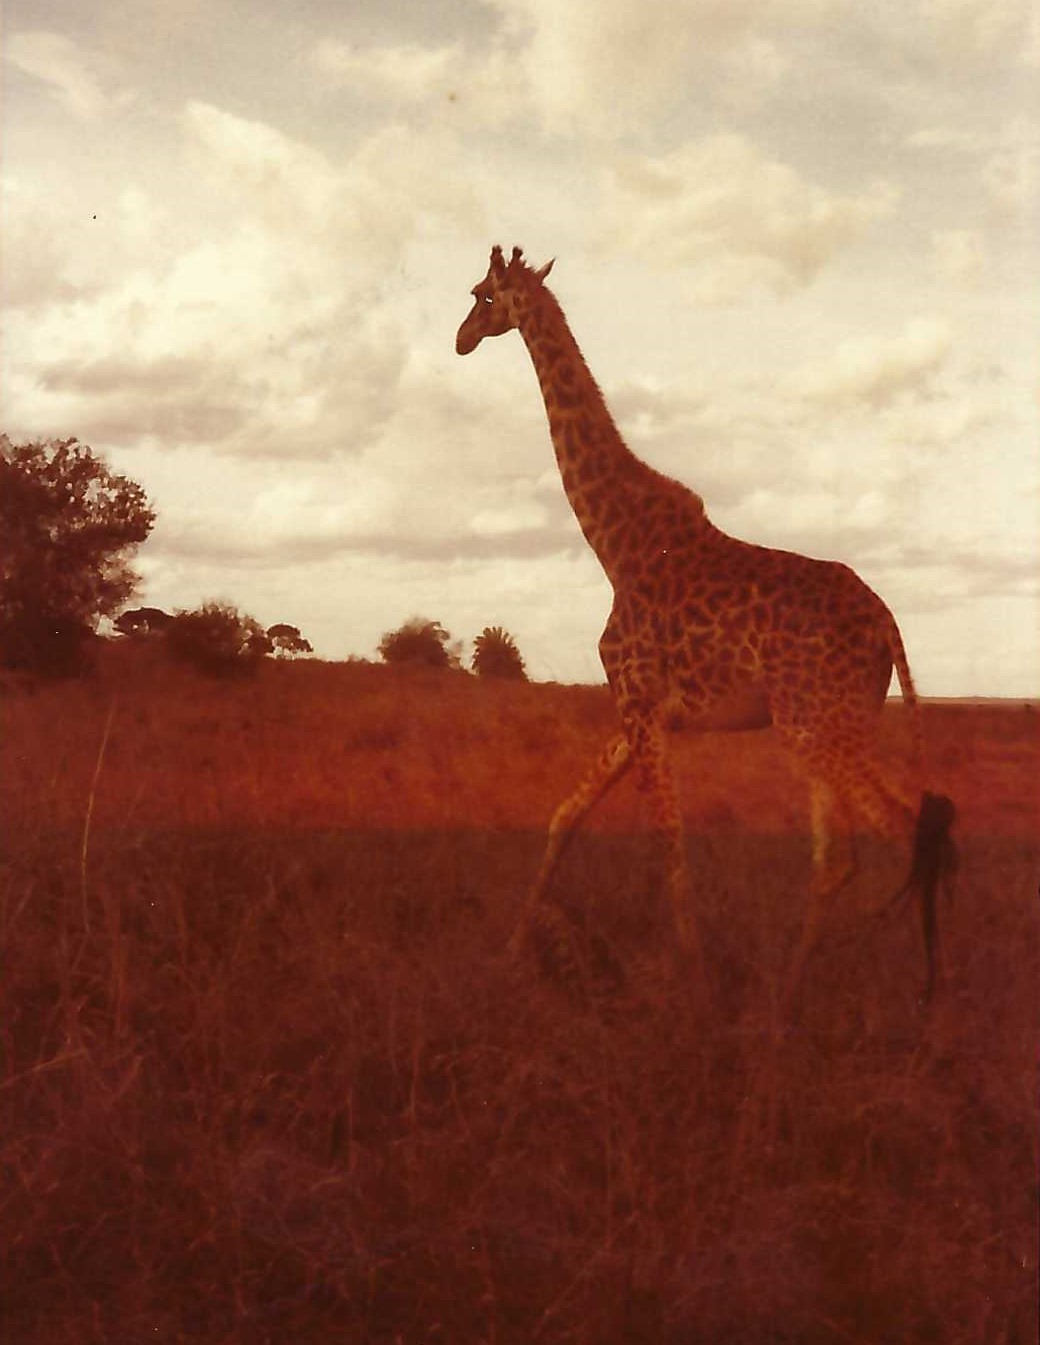 A giraffe walking through the grass in an open field.